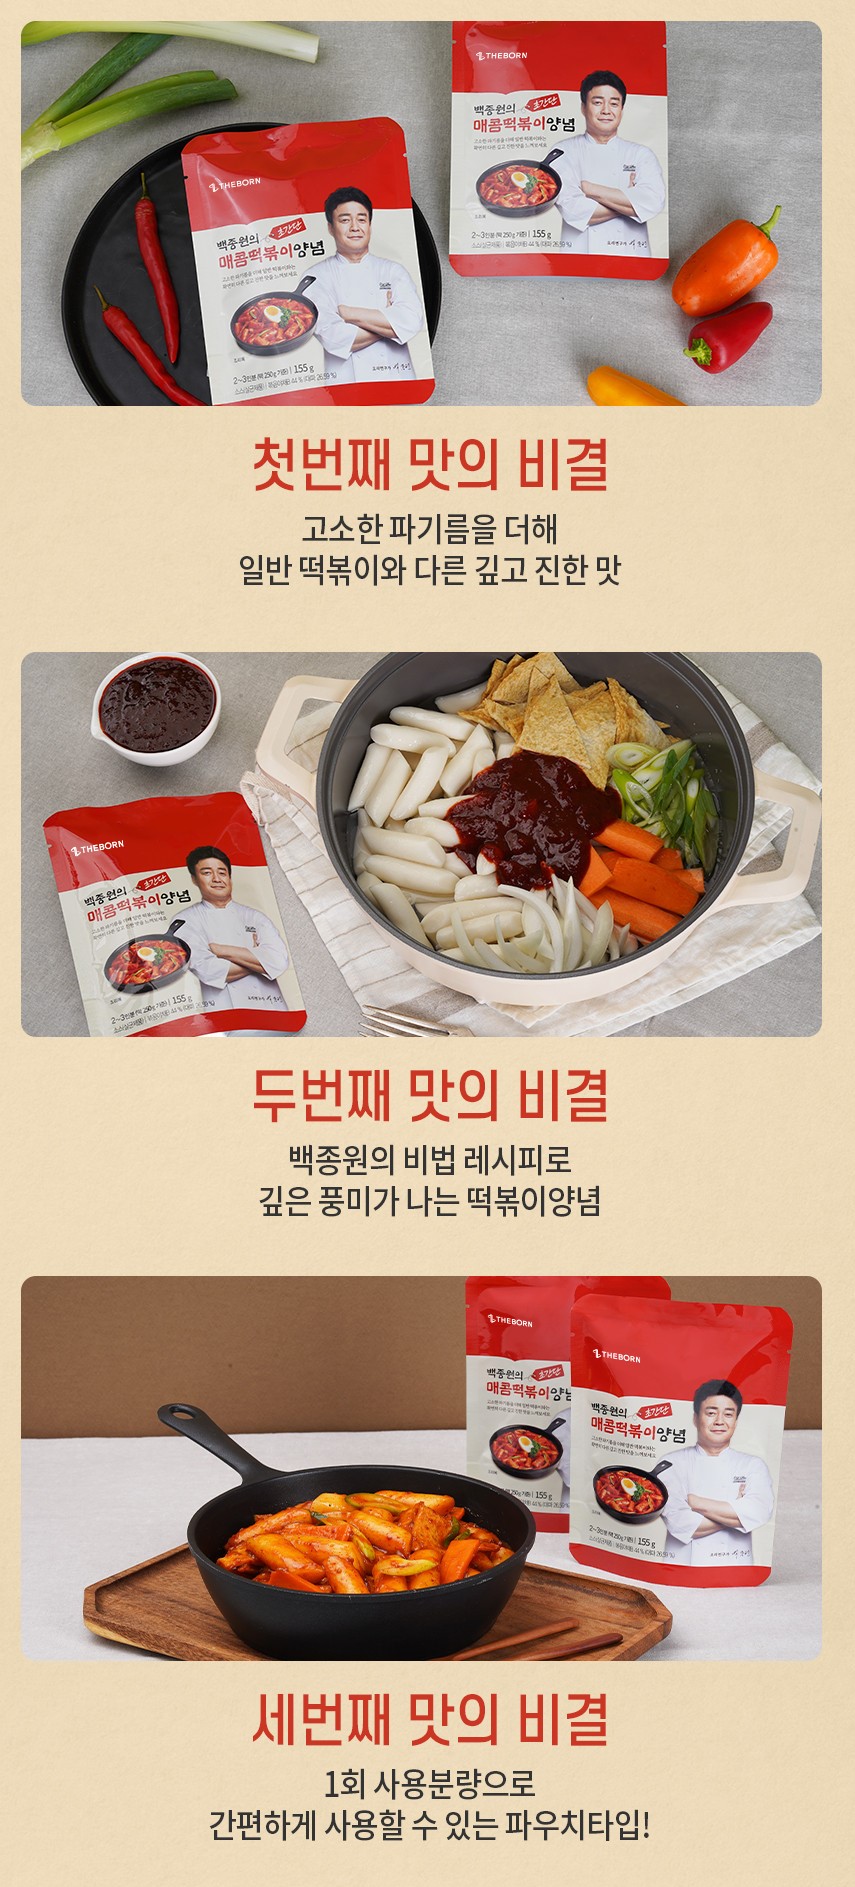 韓國食品-[더본] 백종원의 매콤떡볶이양념 155g